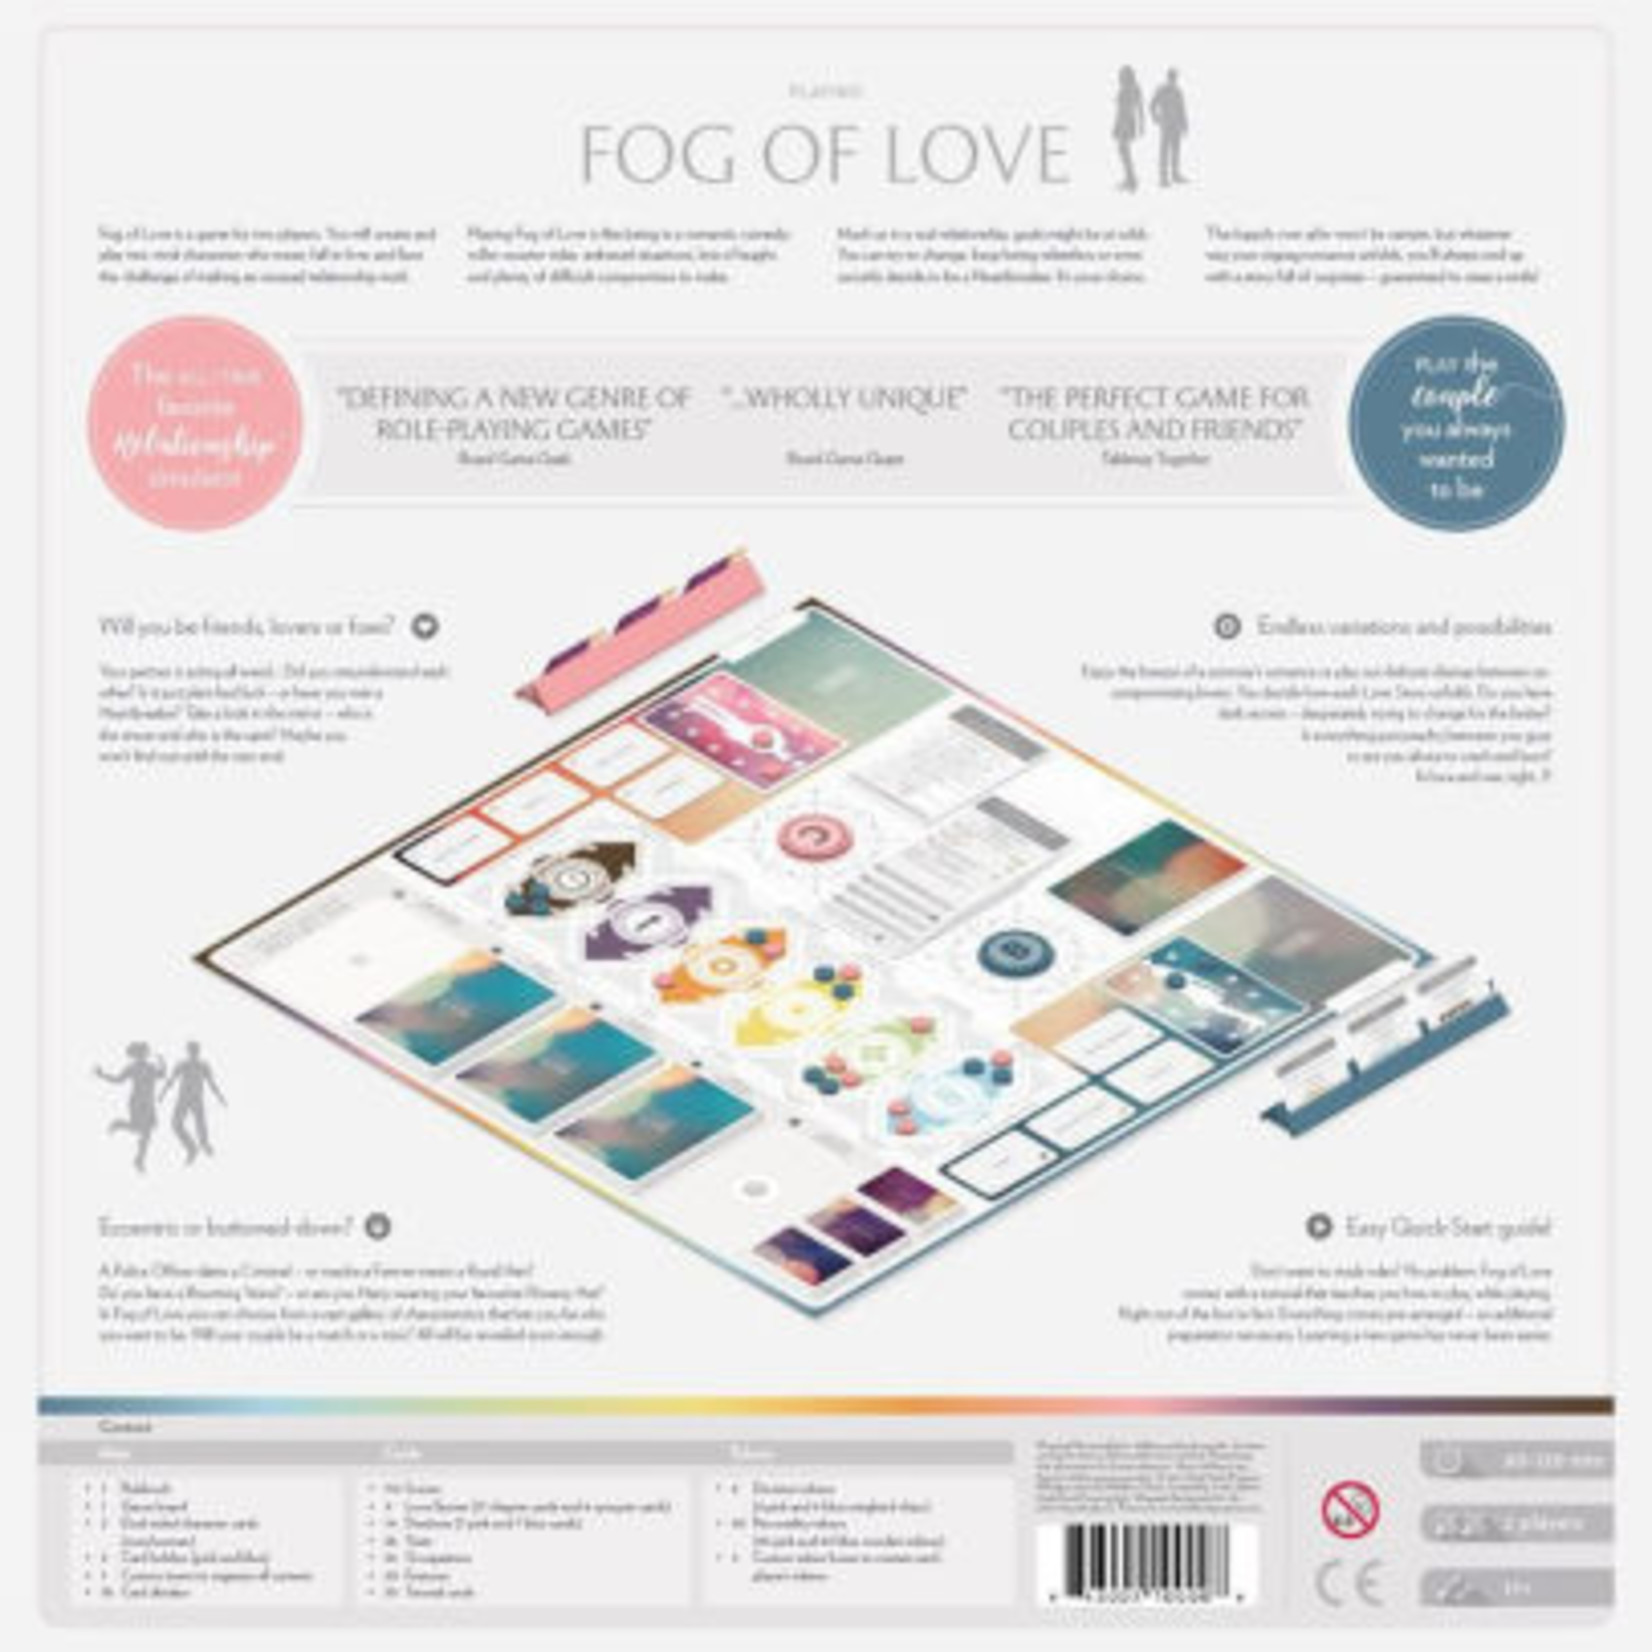 Fog of Love: Diversity Cover